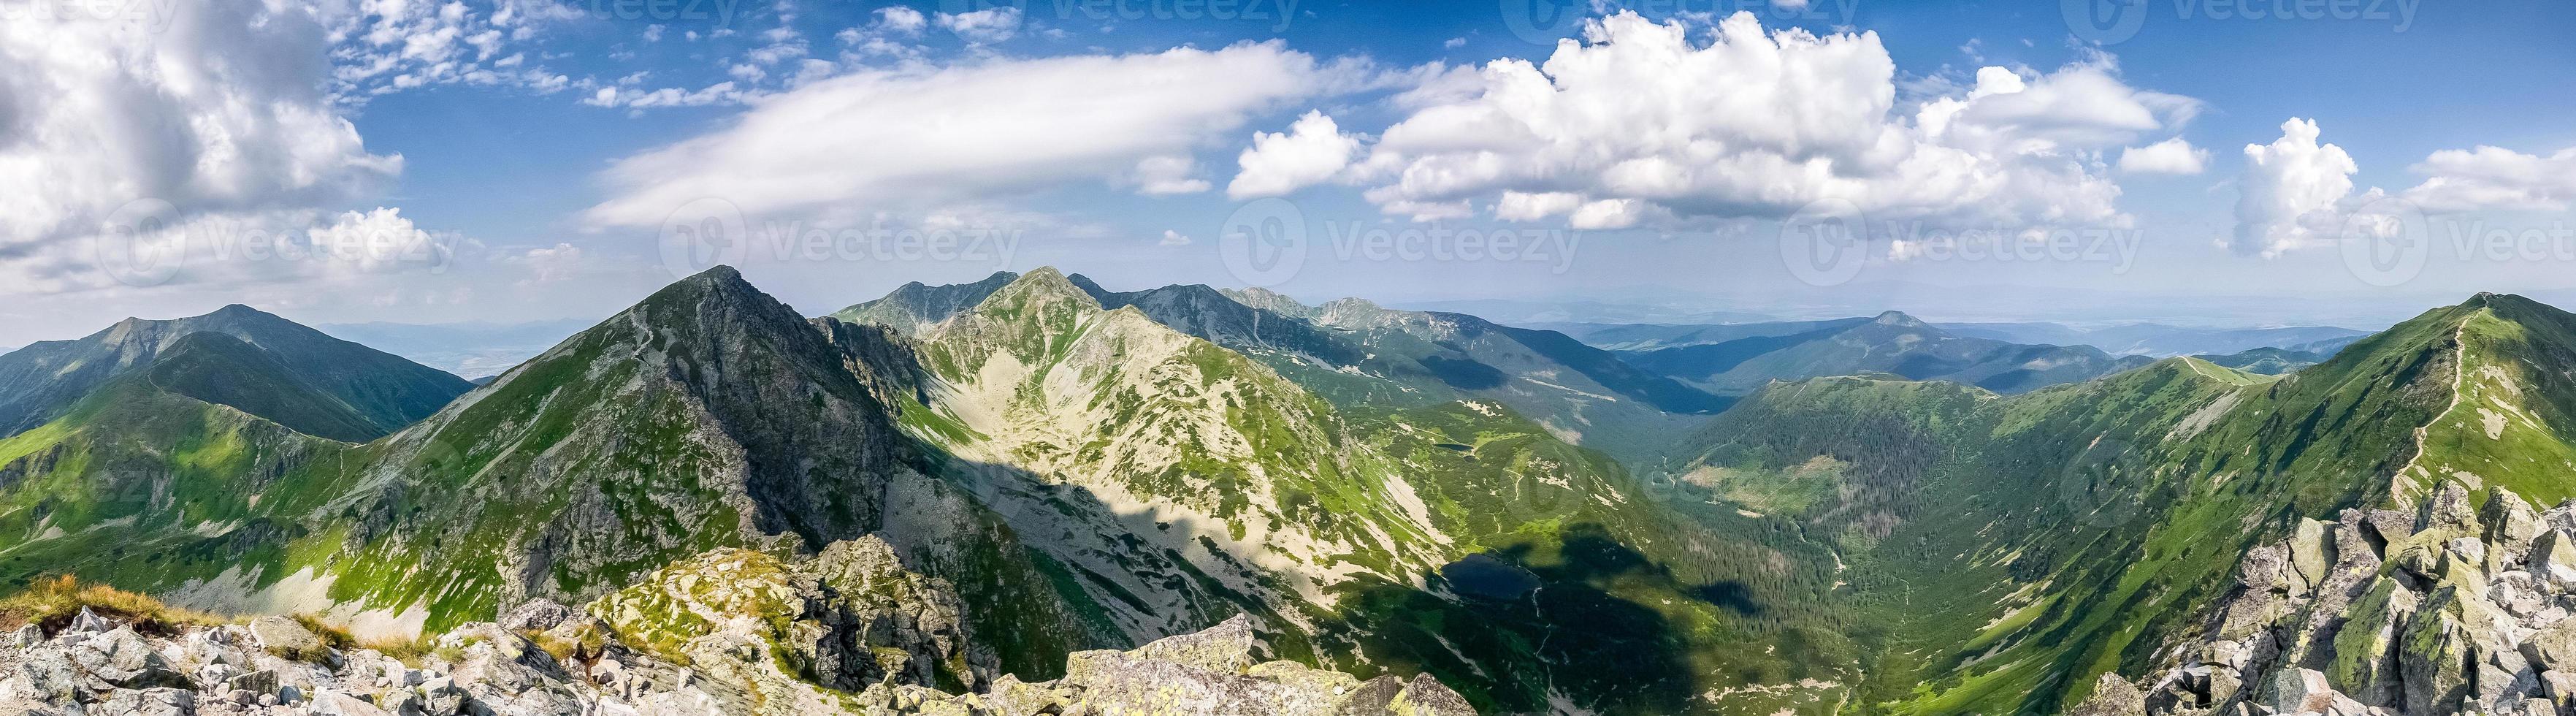 panorama do topo da montanha - tatras oeste, eslováquia foto